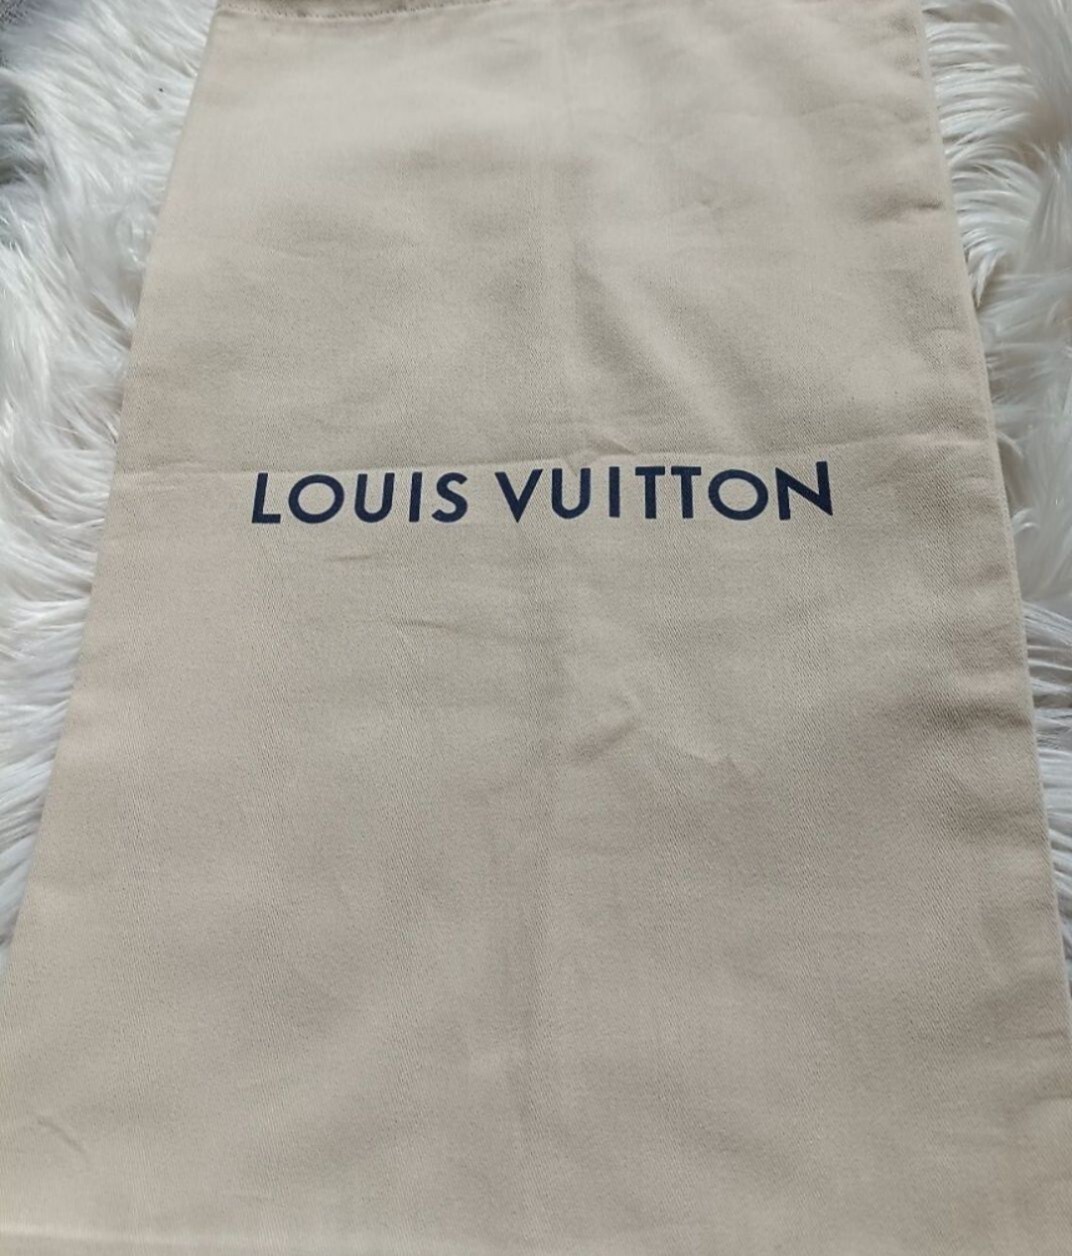 Worek torebka Louis Vuitton Ostrzeszów •